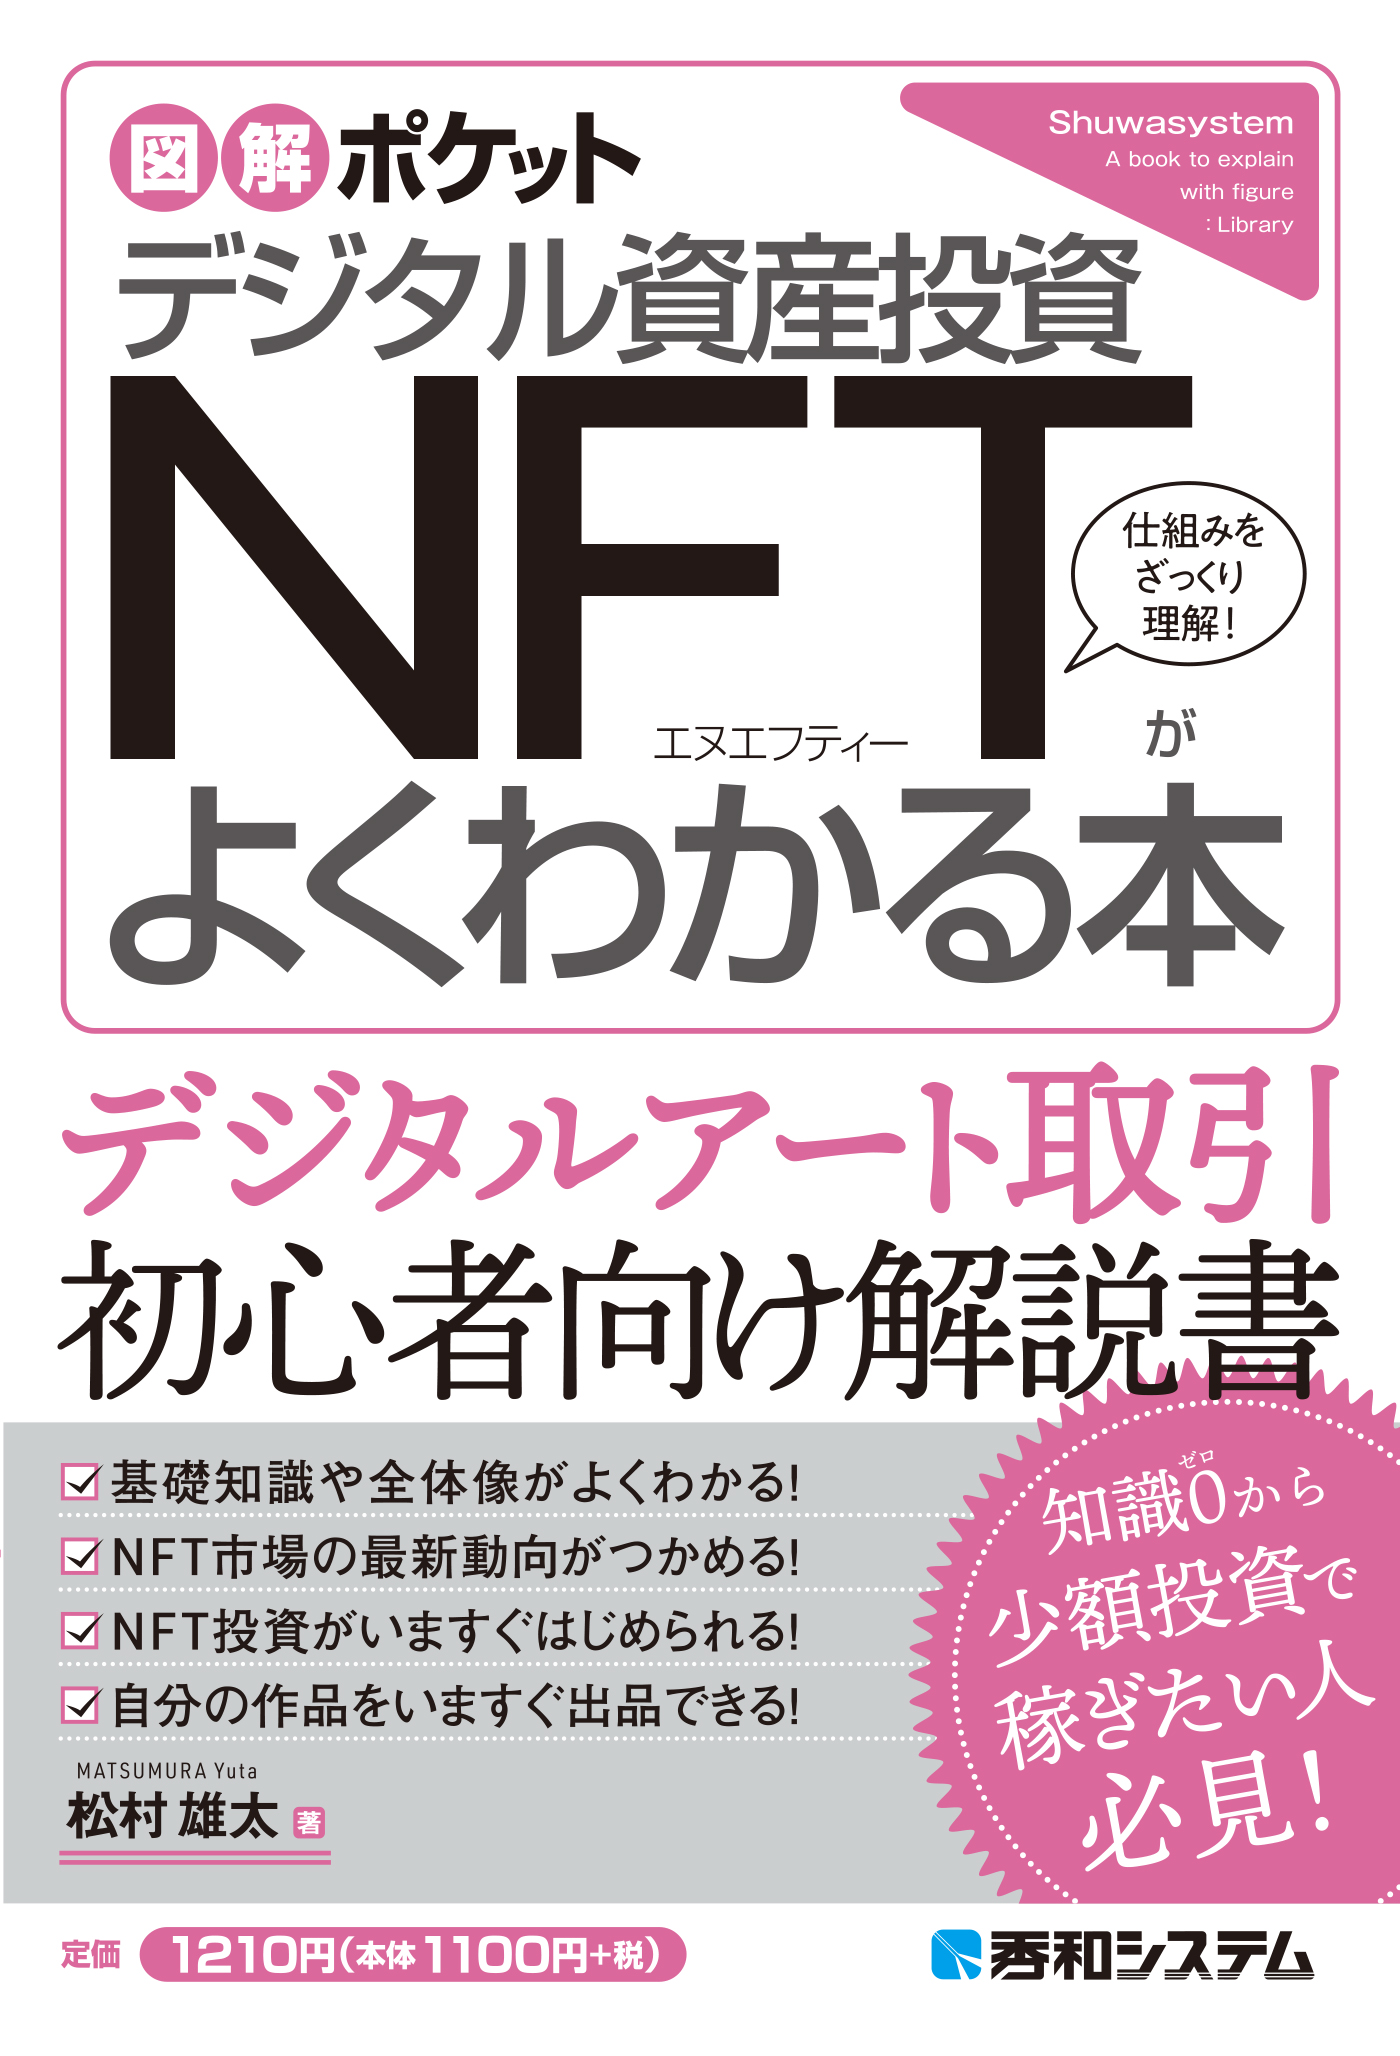 デジタル資産「NFT」の教科書増田雅史 - drailanadermato.com.br